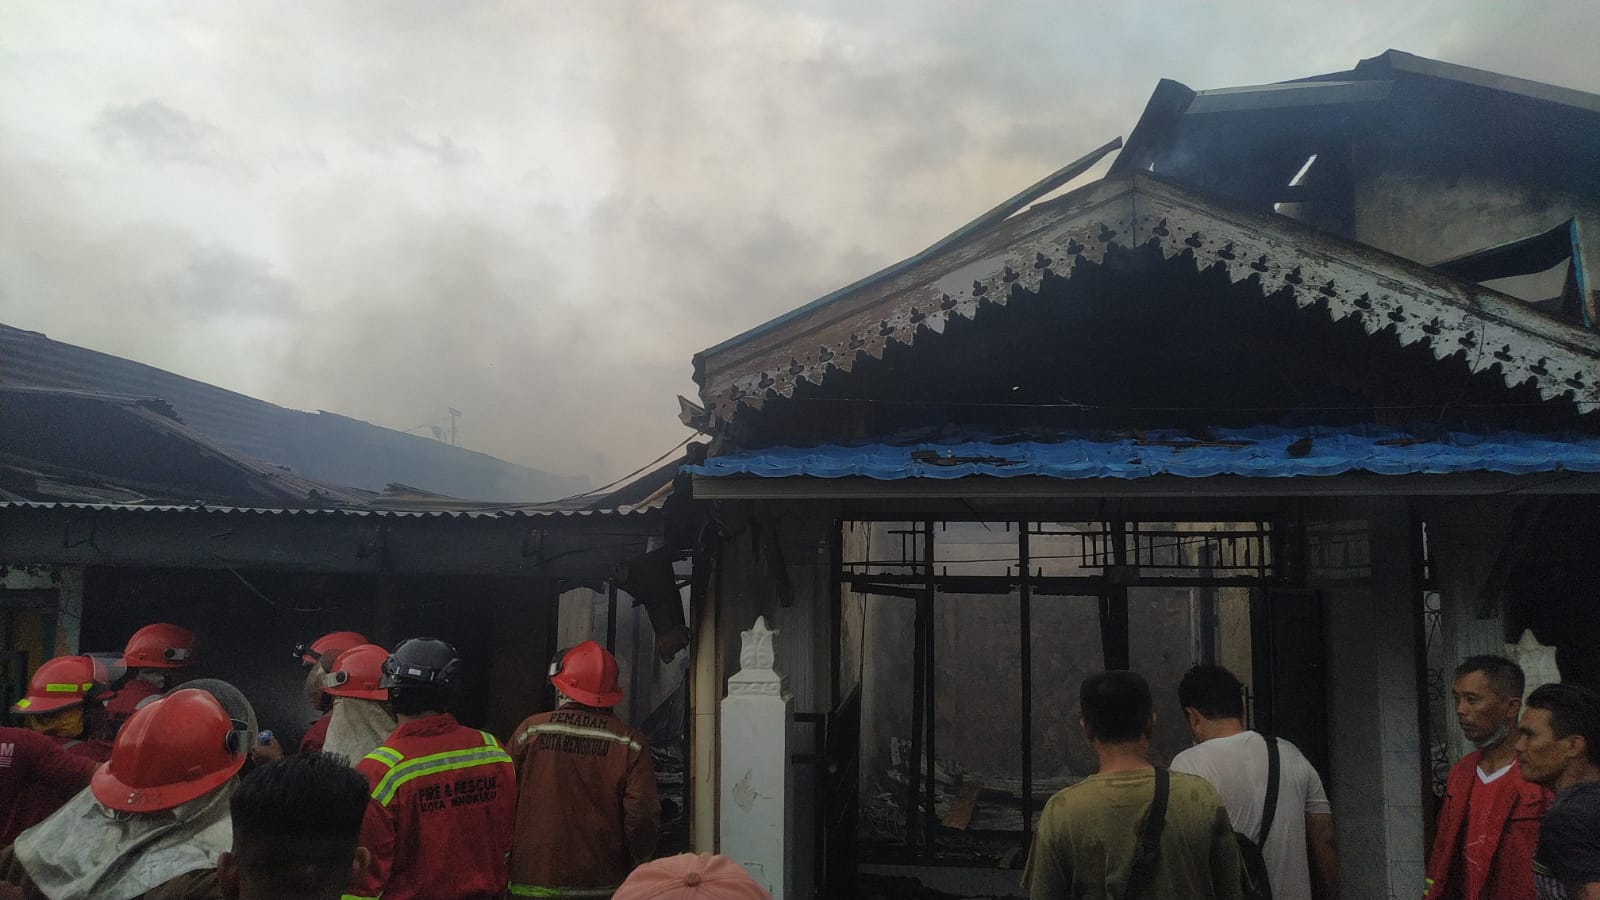 Belasan Rumah di Kota Bengkulu Hangus Terbakar